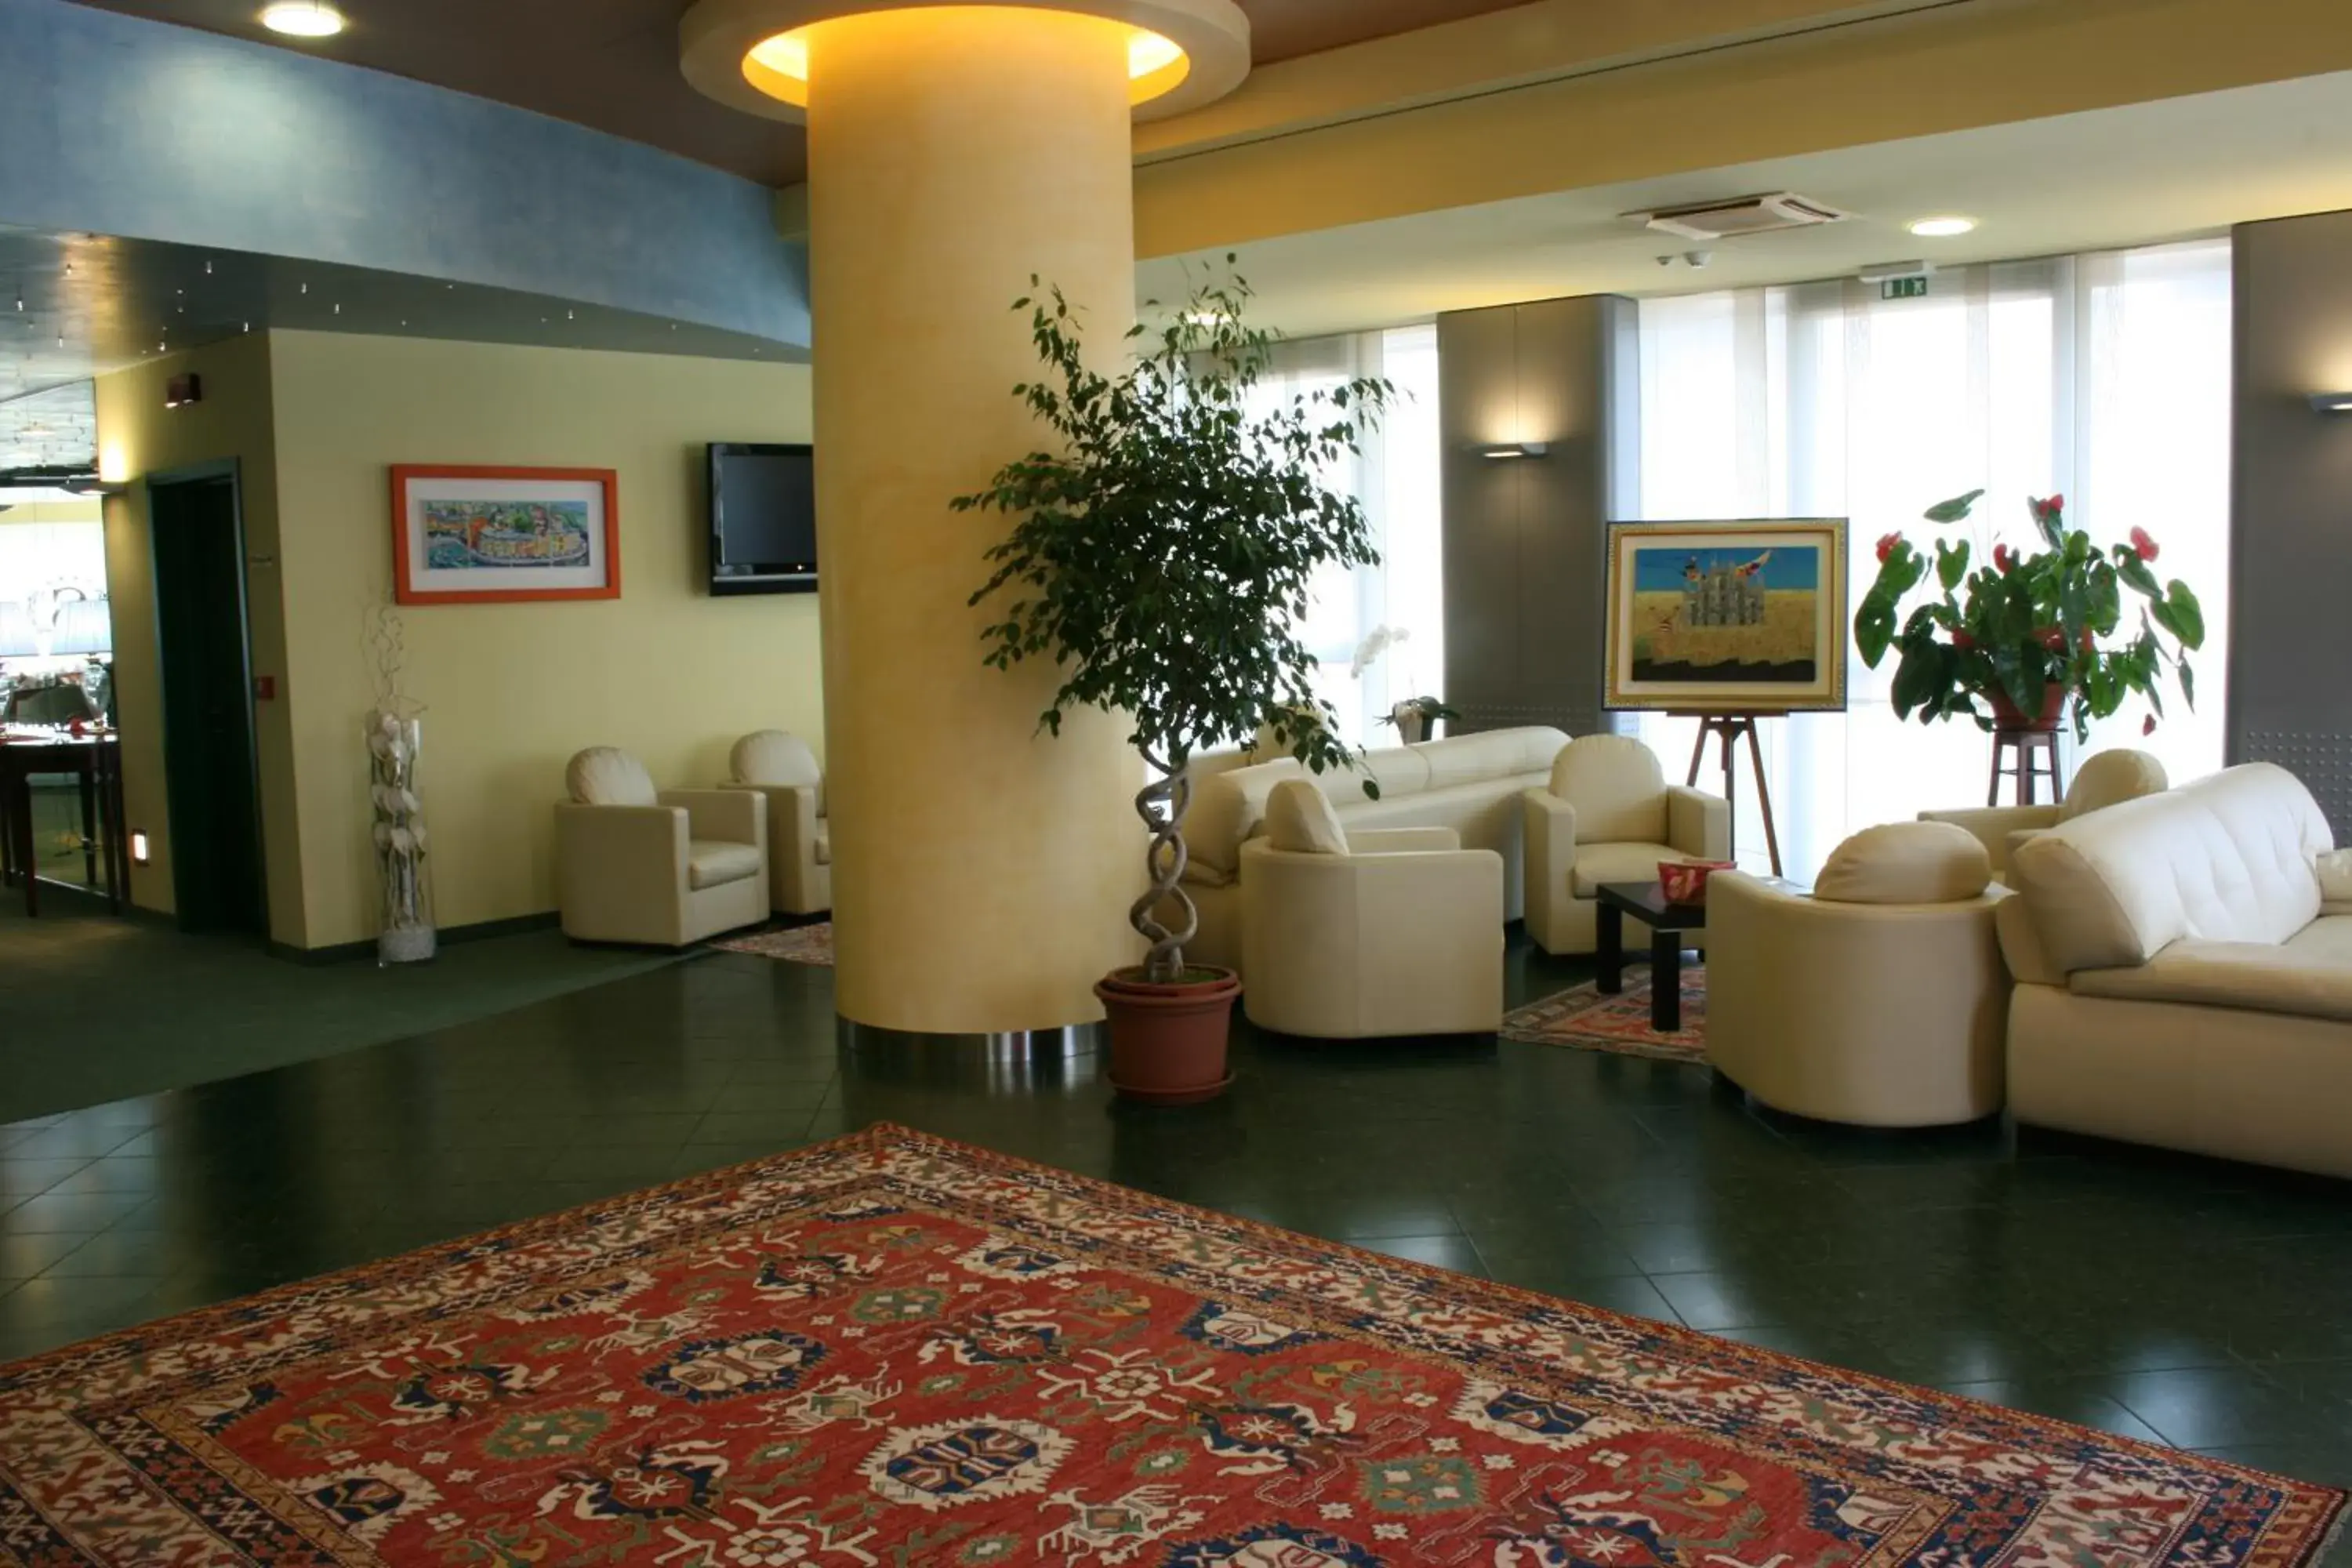 Lobby or reception, Lobby/Reception in Hotel Senator